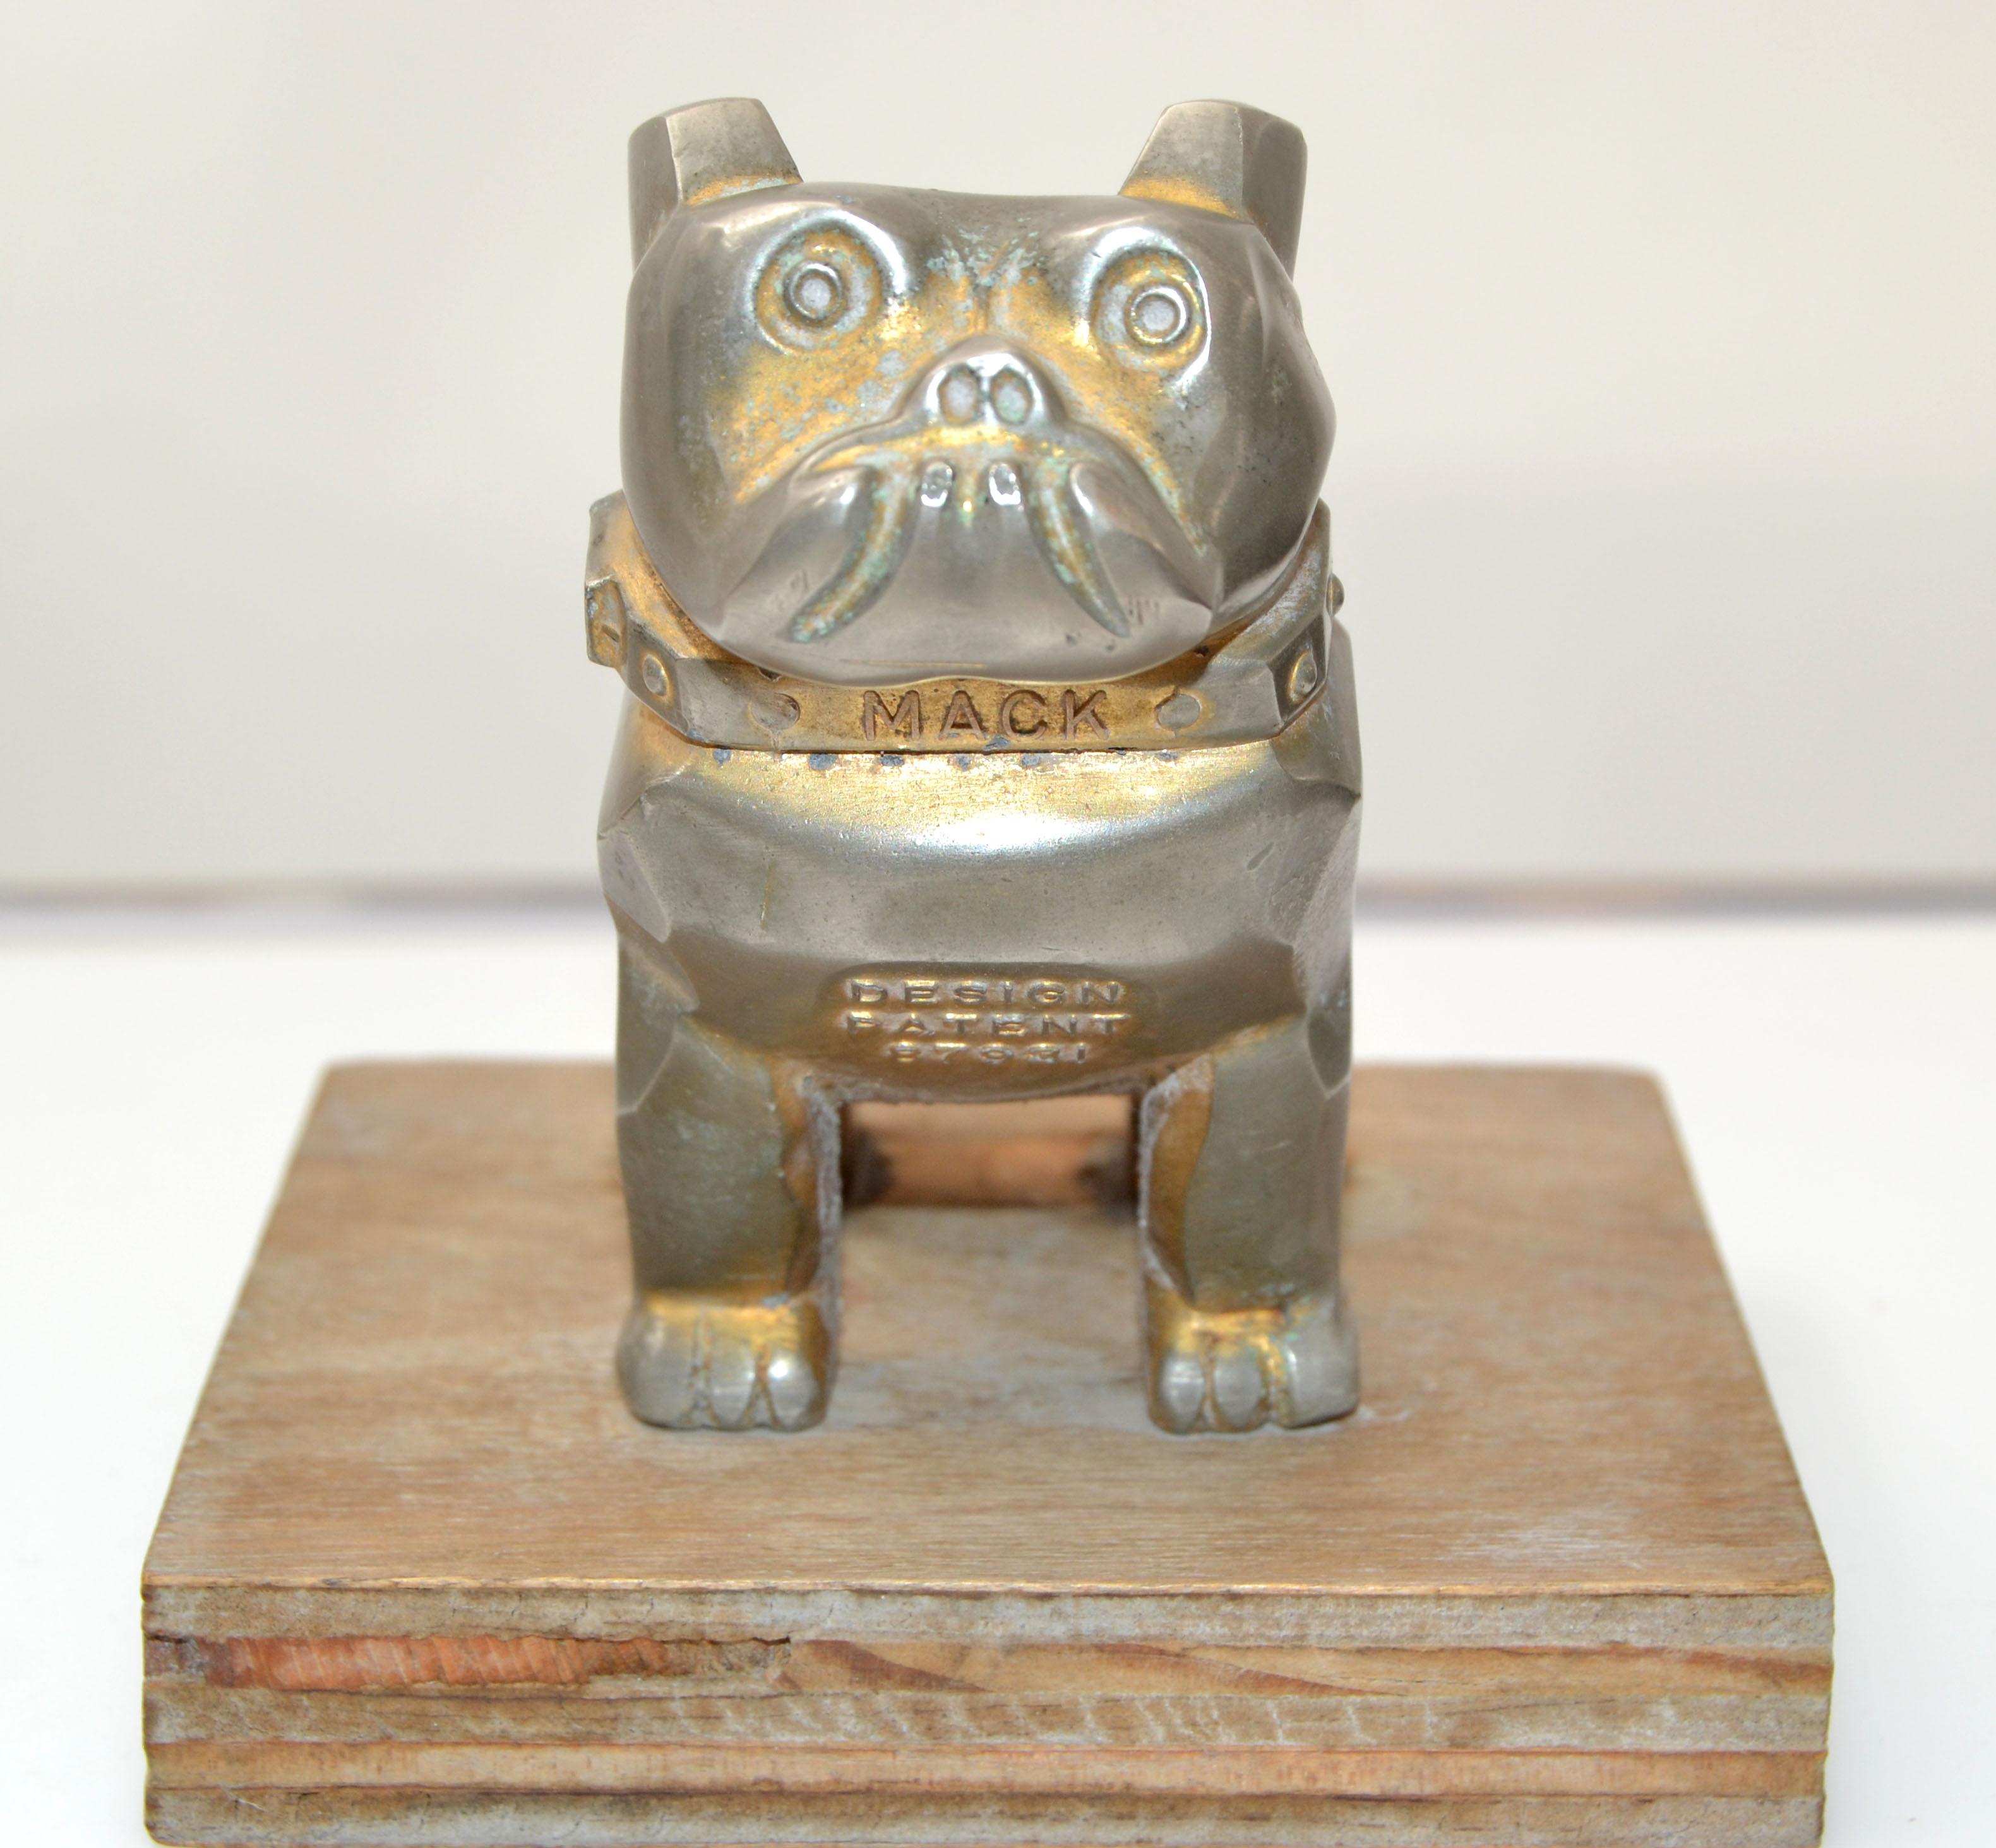 Vintage Design Patent Mack Trucks Bulldog Figur, Statue, Tierskulptur.
Bullenhund aus versilberter Bronze auf einem Holzsockel.
Markiert Mack, 87931, Geschmacksmuster.
Die Basis misst: 4.25 x 4,25 x 0,75 Zoll.